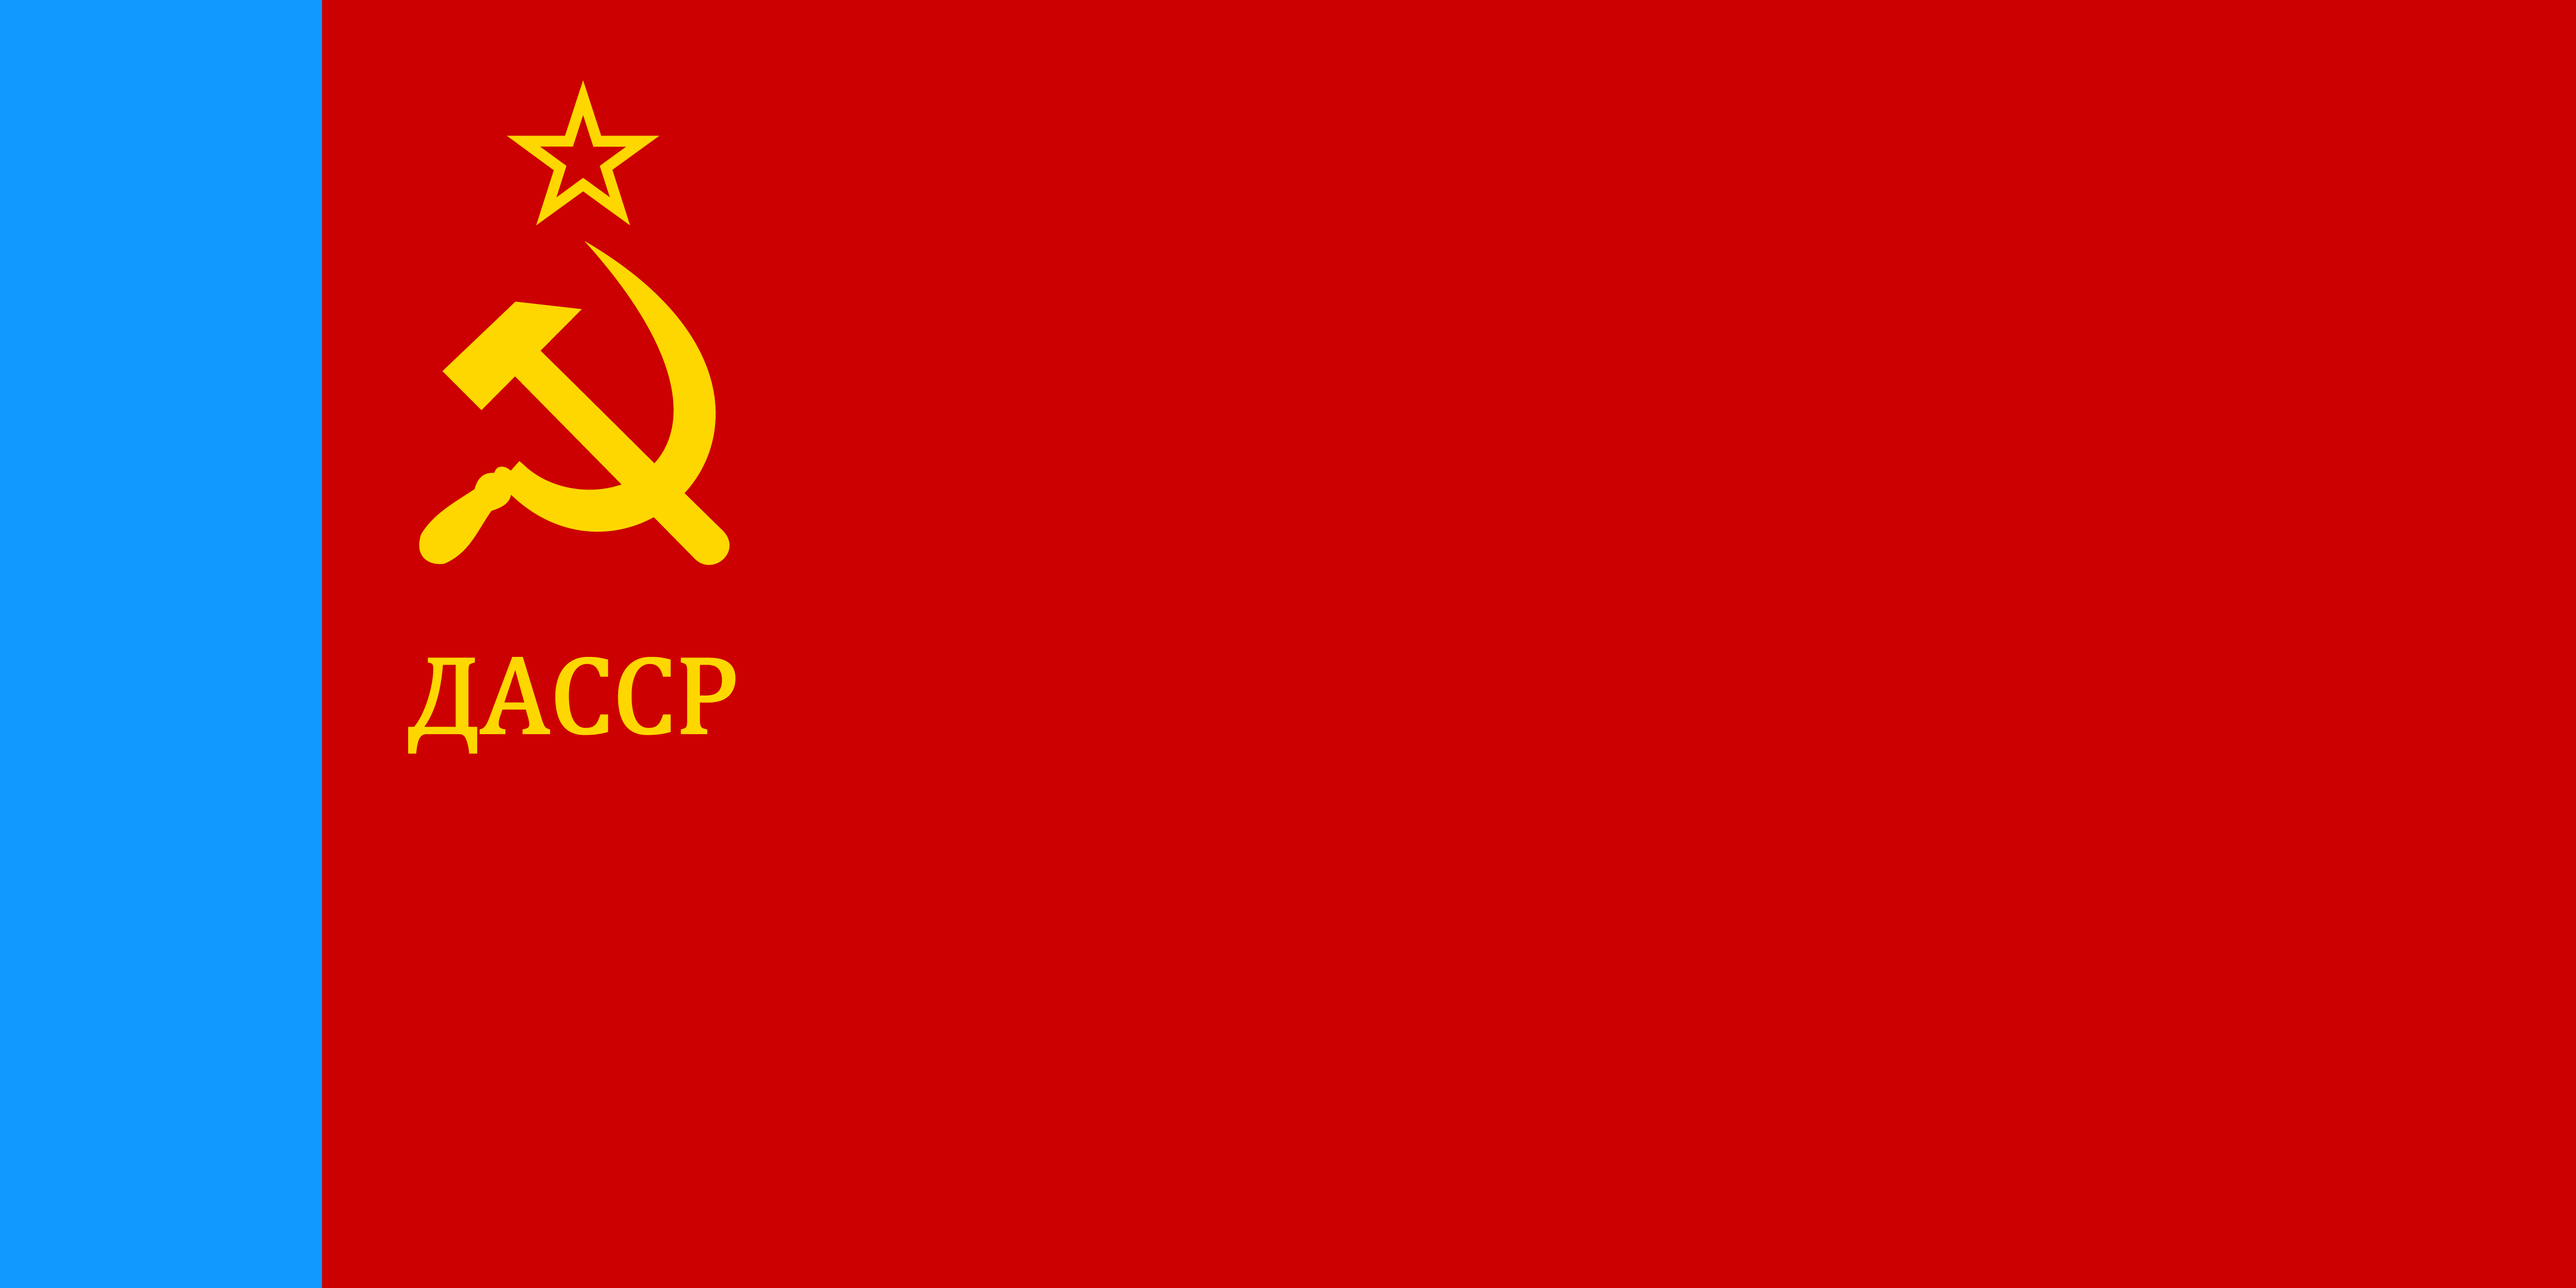 達吉斯坦蘇維埃社會主義自治共和國